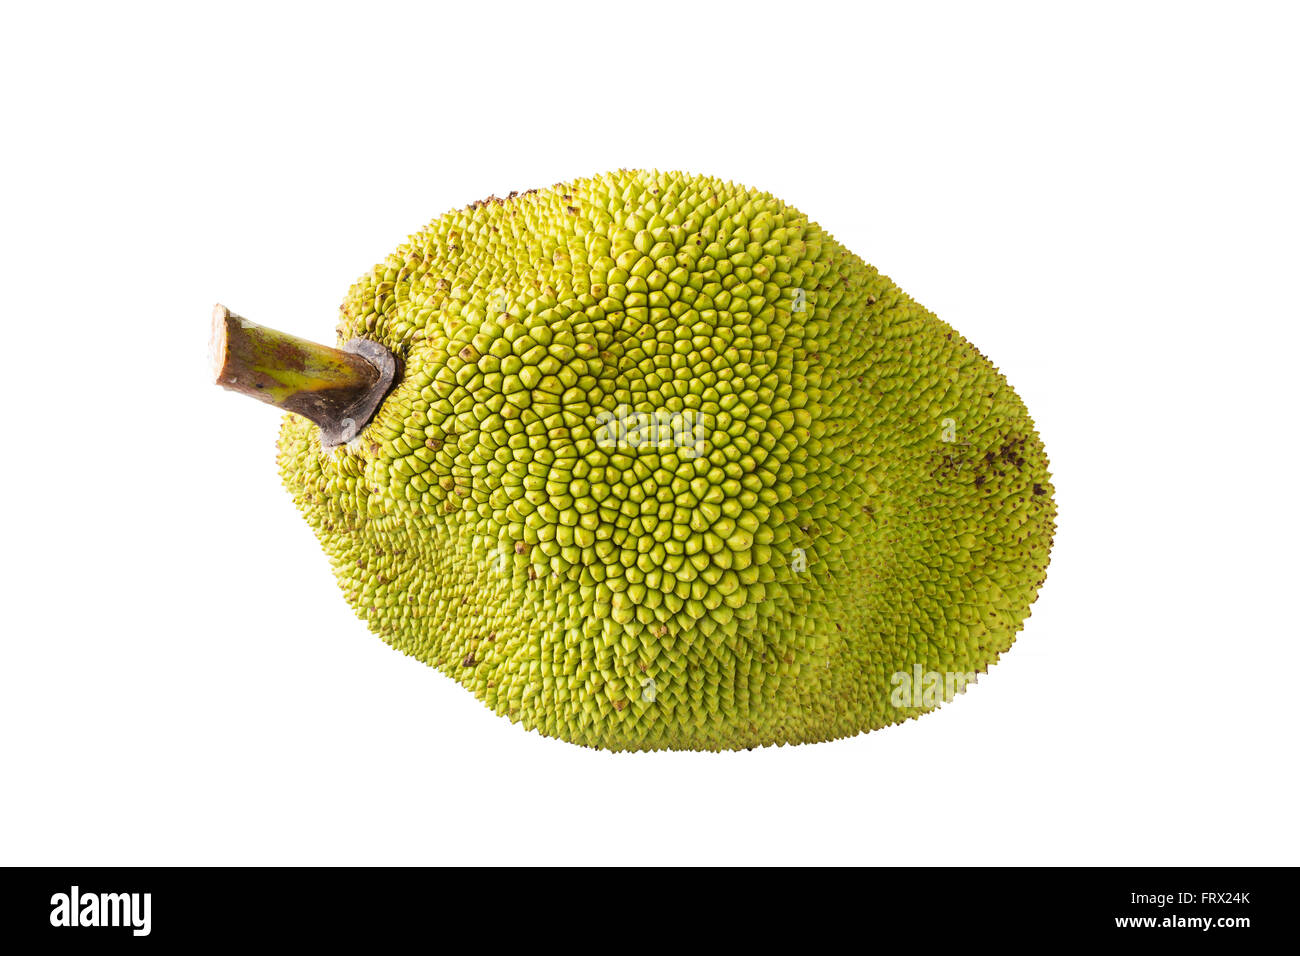 Jackfruit, ripe fruit on a white background. Stock Photo